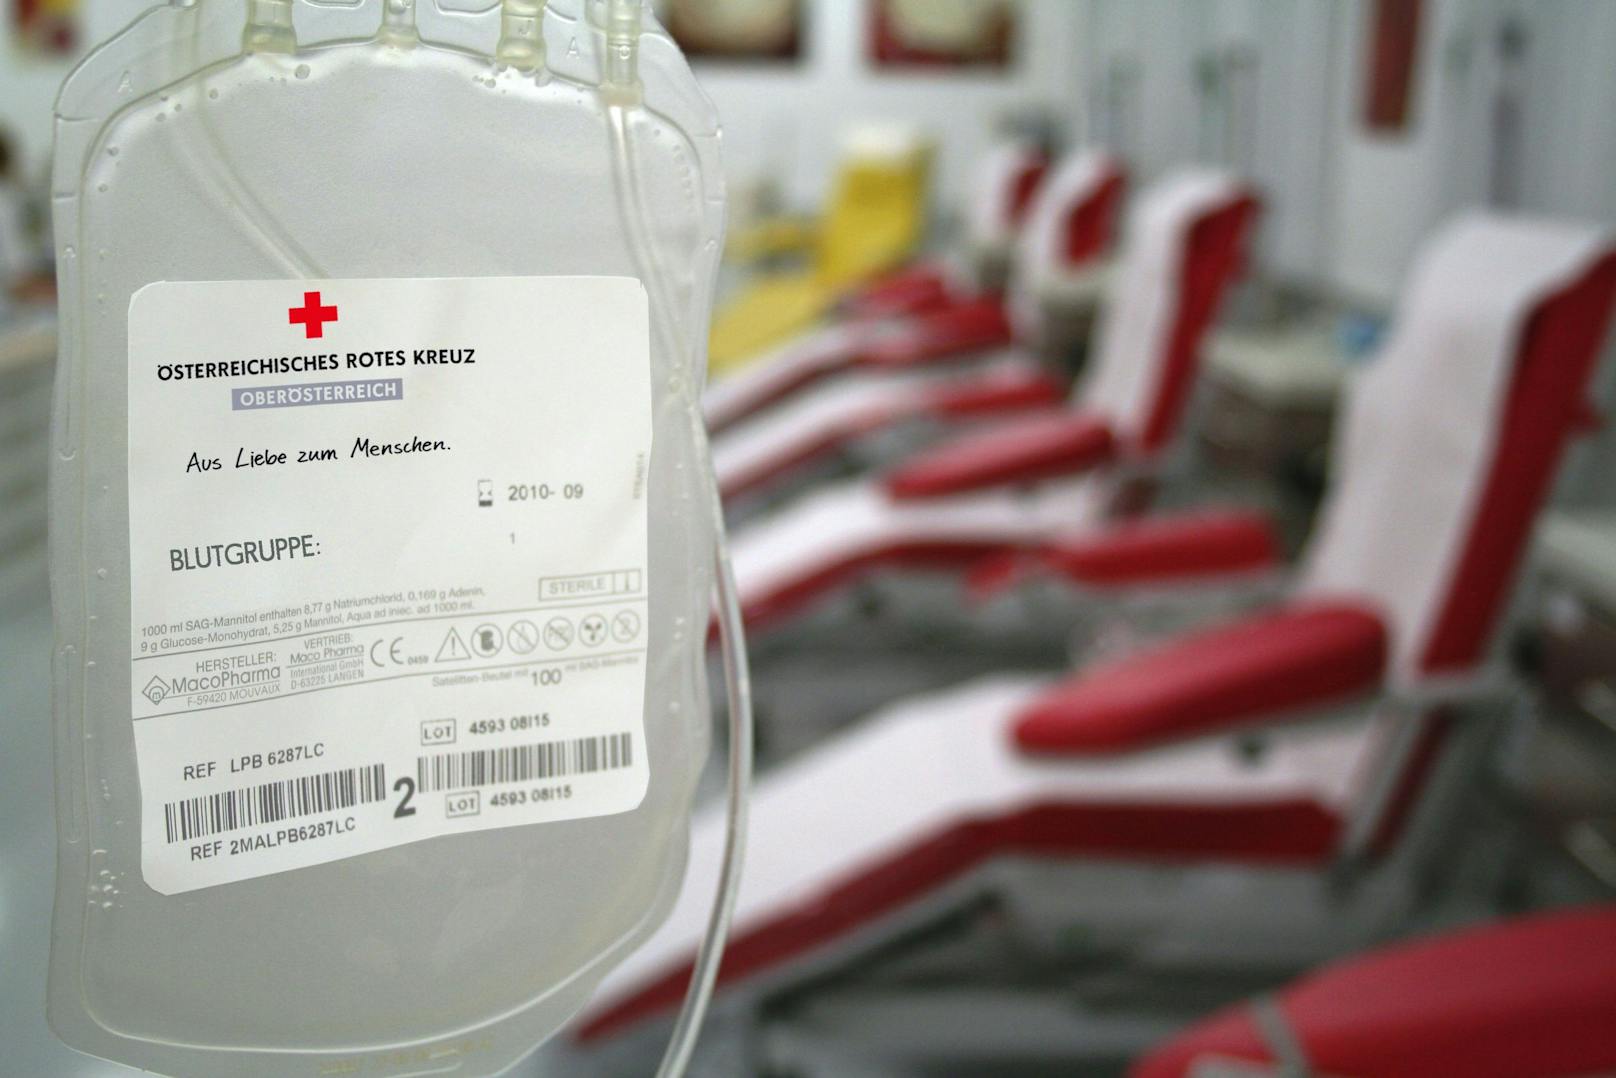 Das Rote Kreuz in Oberöstereich sucht dringend Blutspender.